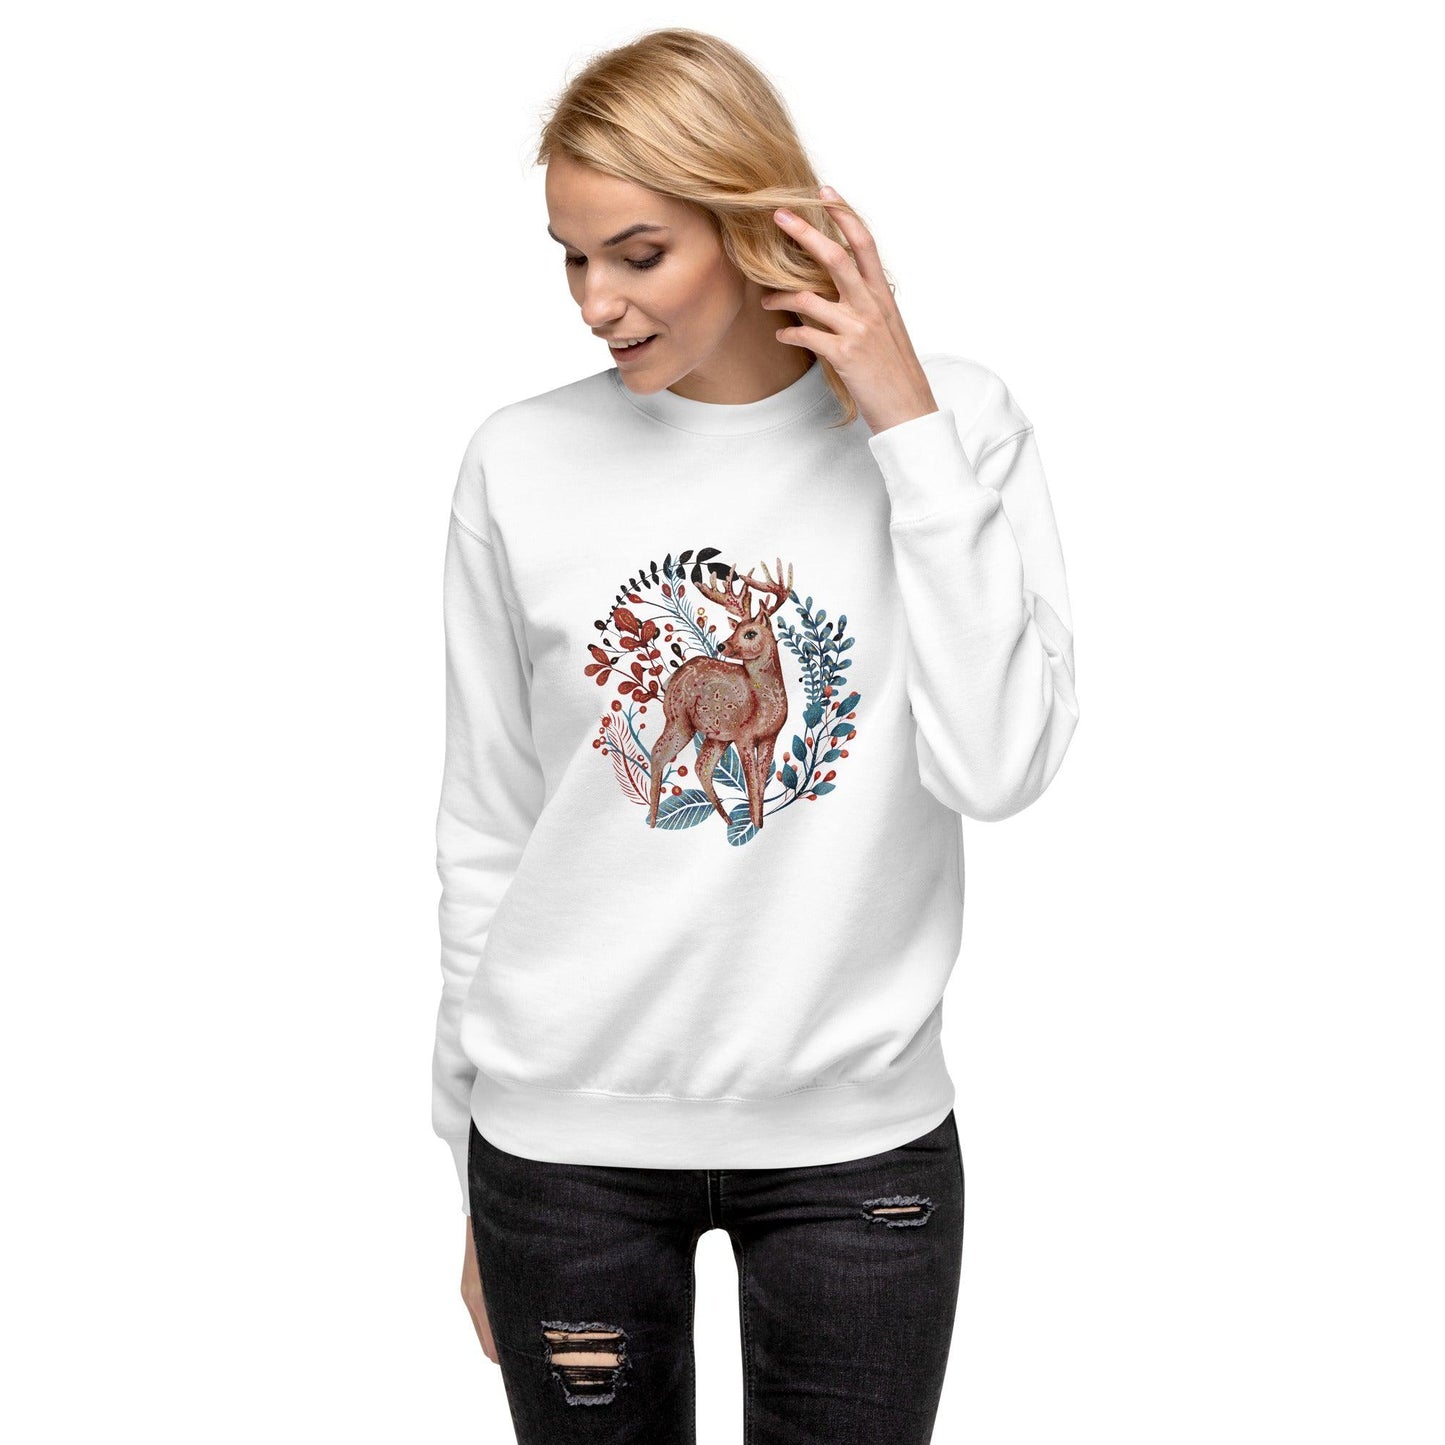 Nordic Winter Sweatshirt - Deer - The Global Wanderer